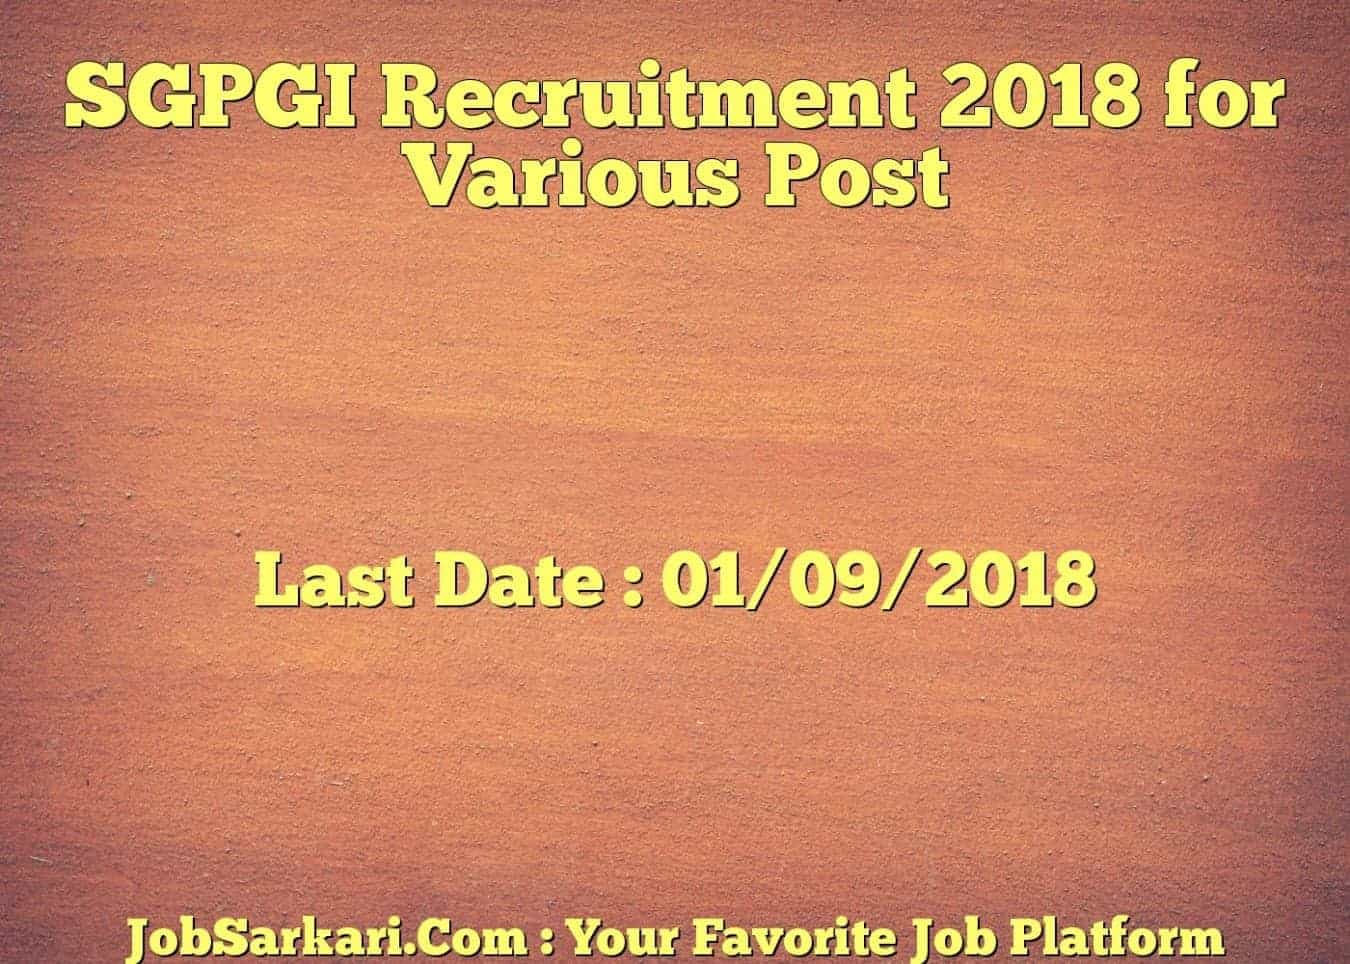 SGPGI Recruitment 2018 for Various Post